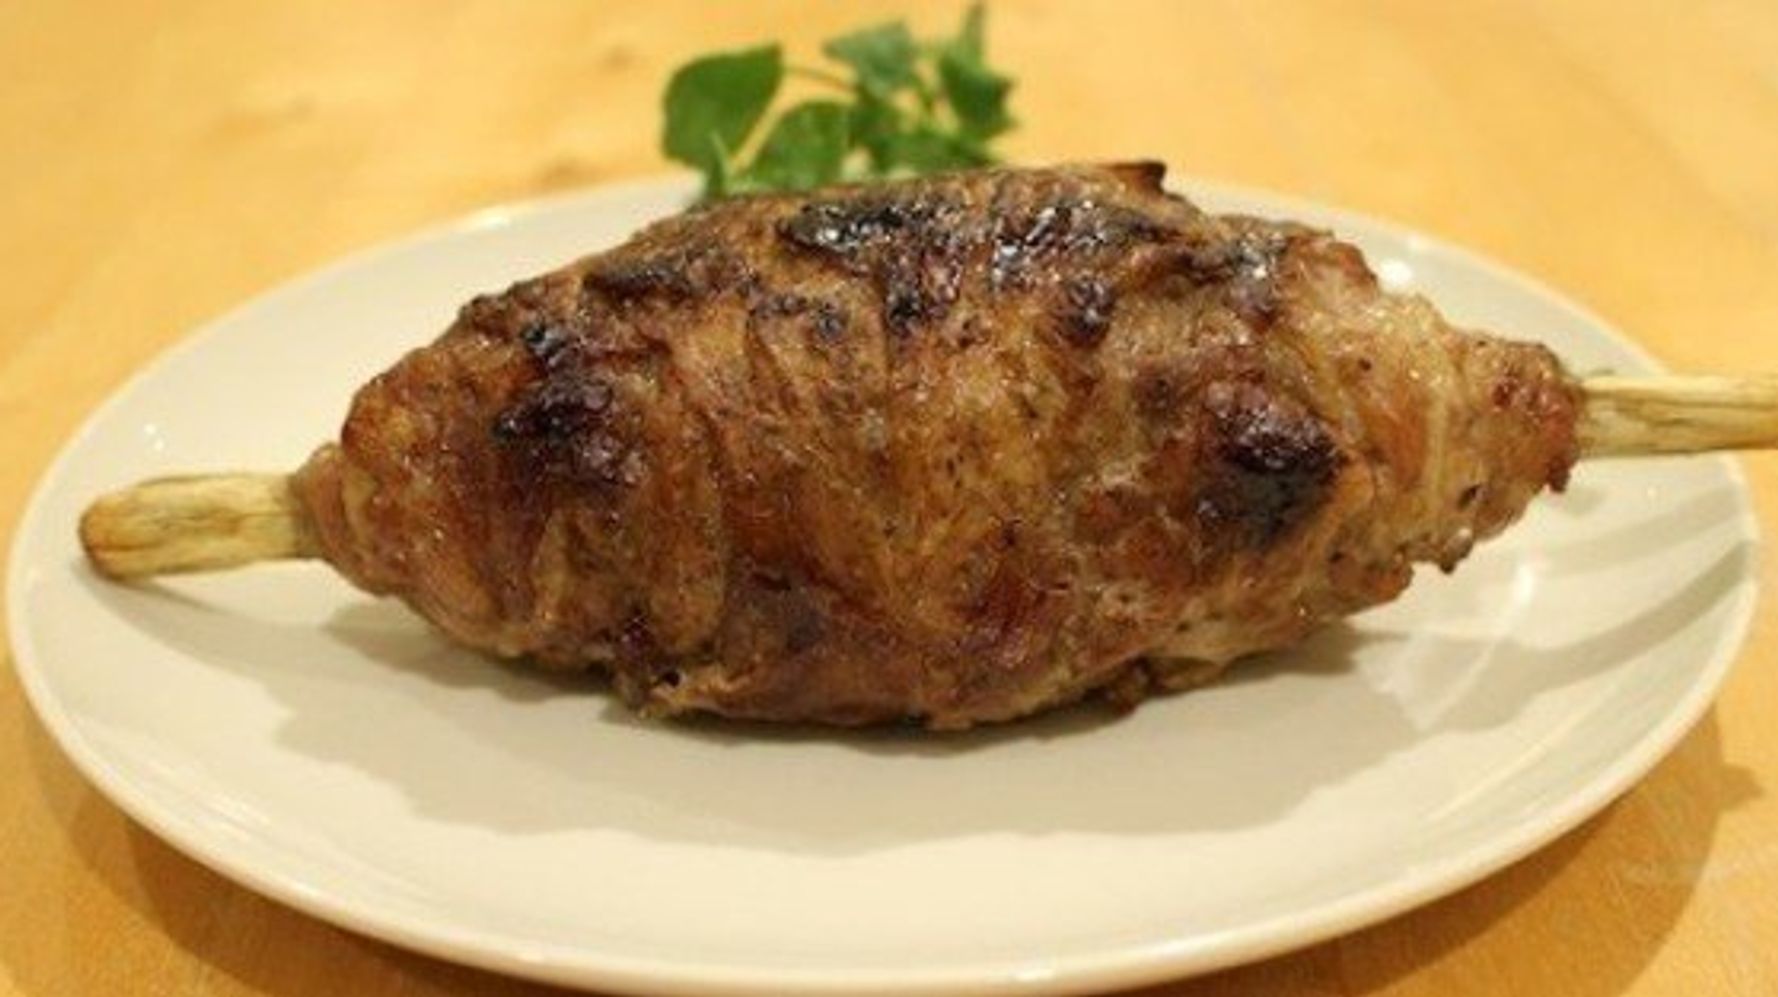 編集部が挑戦 マンモス肉を作ってみたら 男子の食いつきがすごかった ハフポスト Life